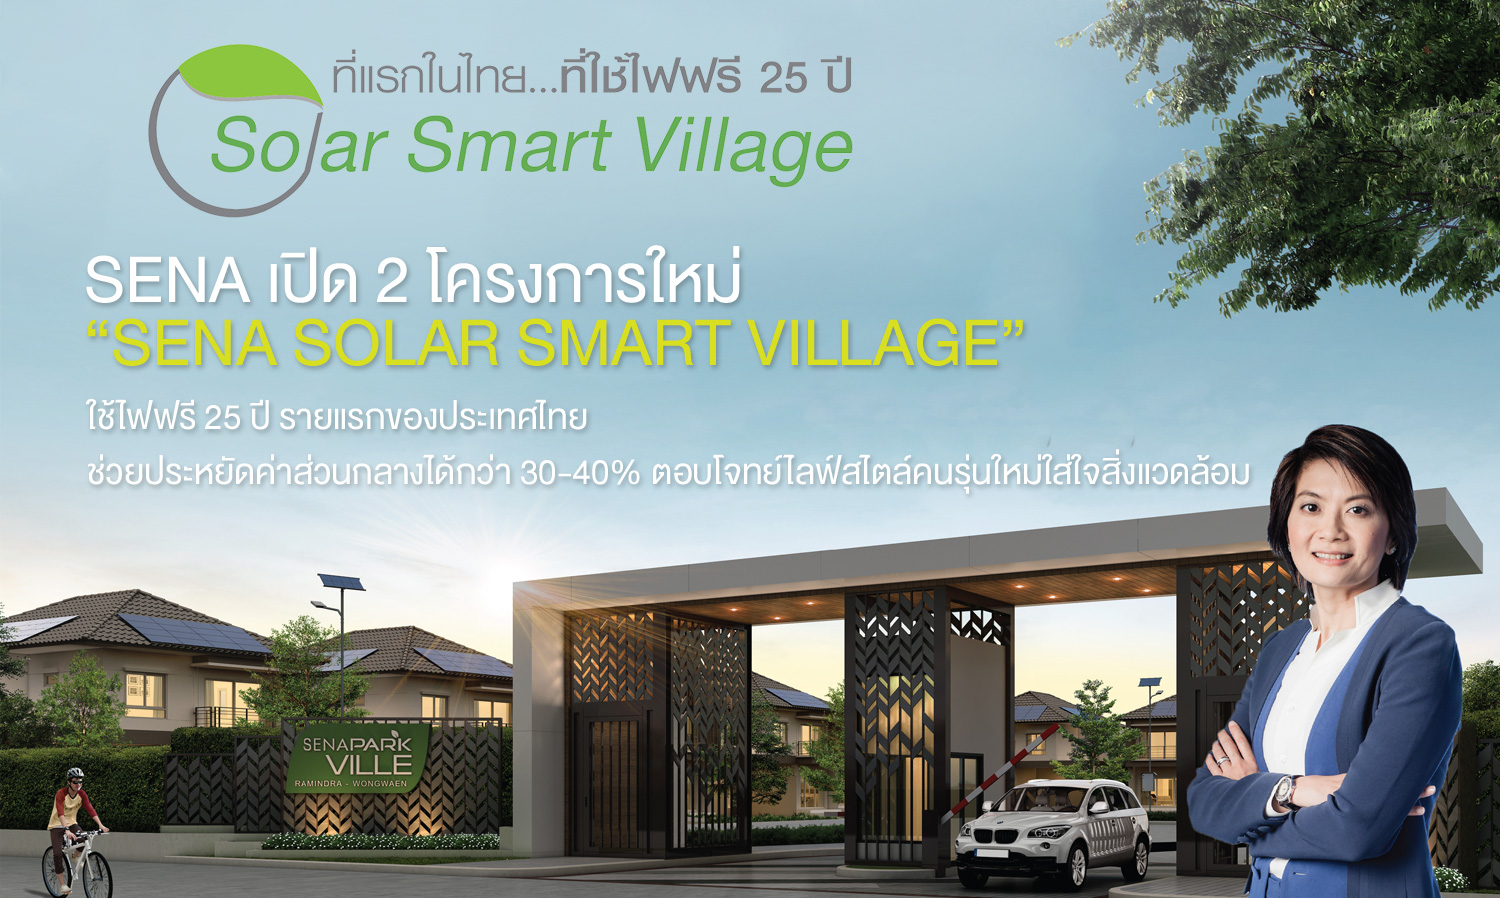 SENA เปิด 2 โครงการใหม่ “SENA Solar Smart Village”  ใช้ไฟฟรี 25 ปี รายแรกของประเทศไทย  ช่วยประหยัดค่าส่วนกลางได้กว่า 30-40%ตอบโจทย์ไลฟ์สไตล์คนรุ่นใหม่ใส่ใจสิ่งแวดล้อม